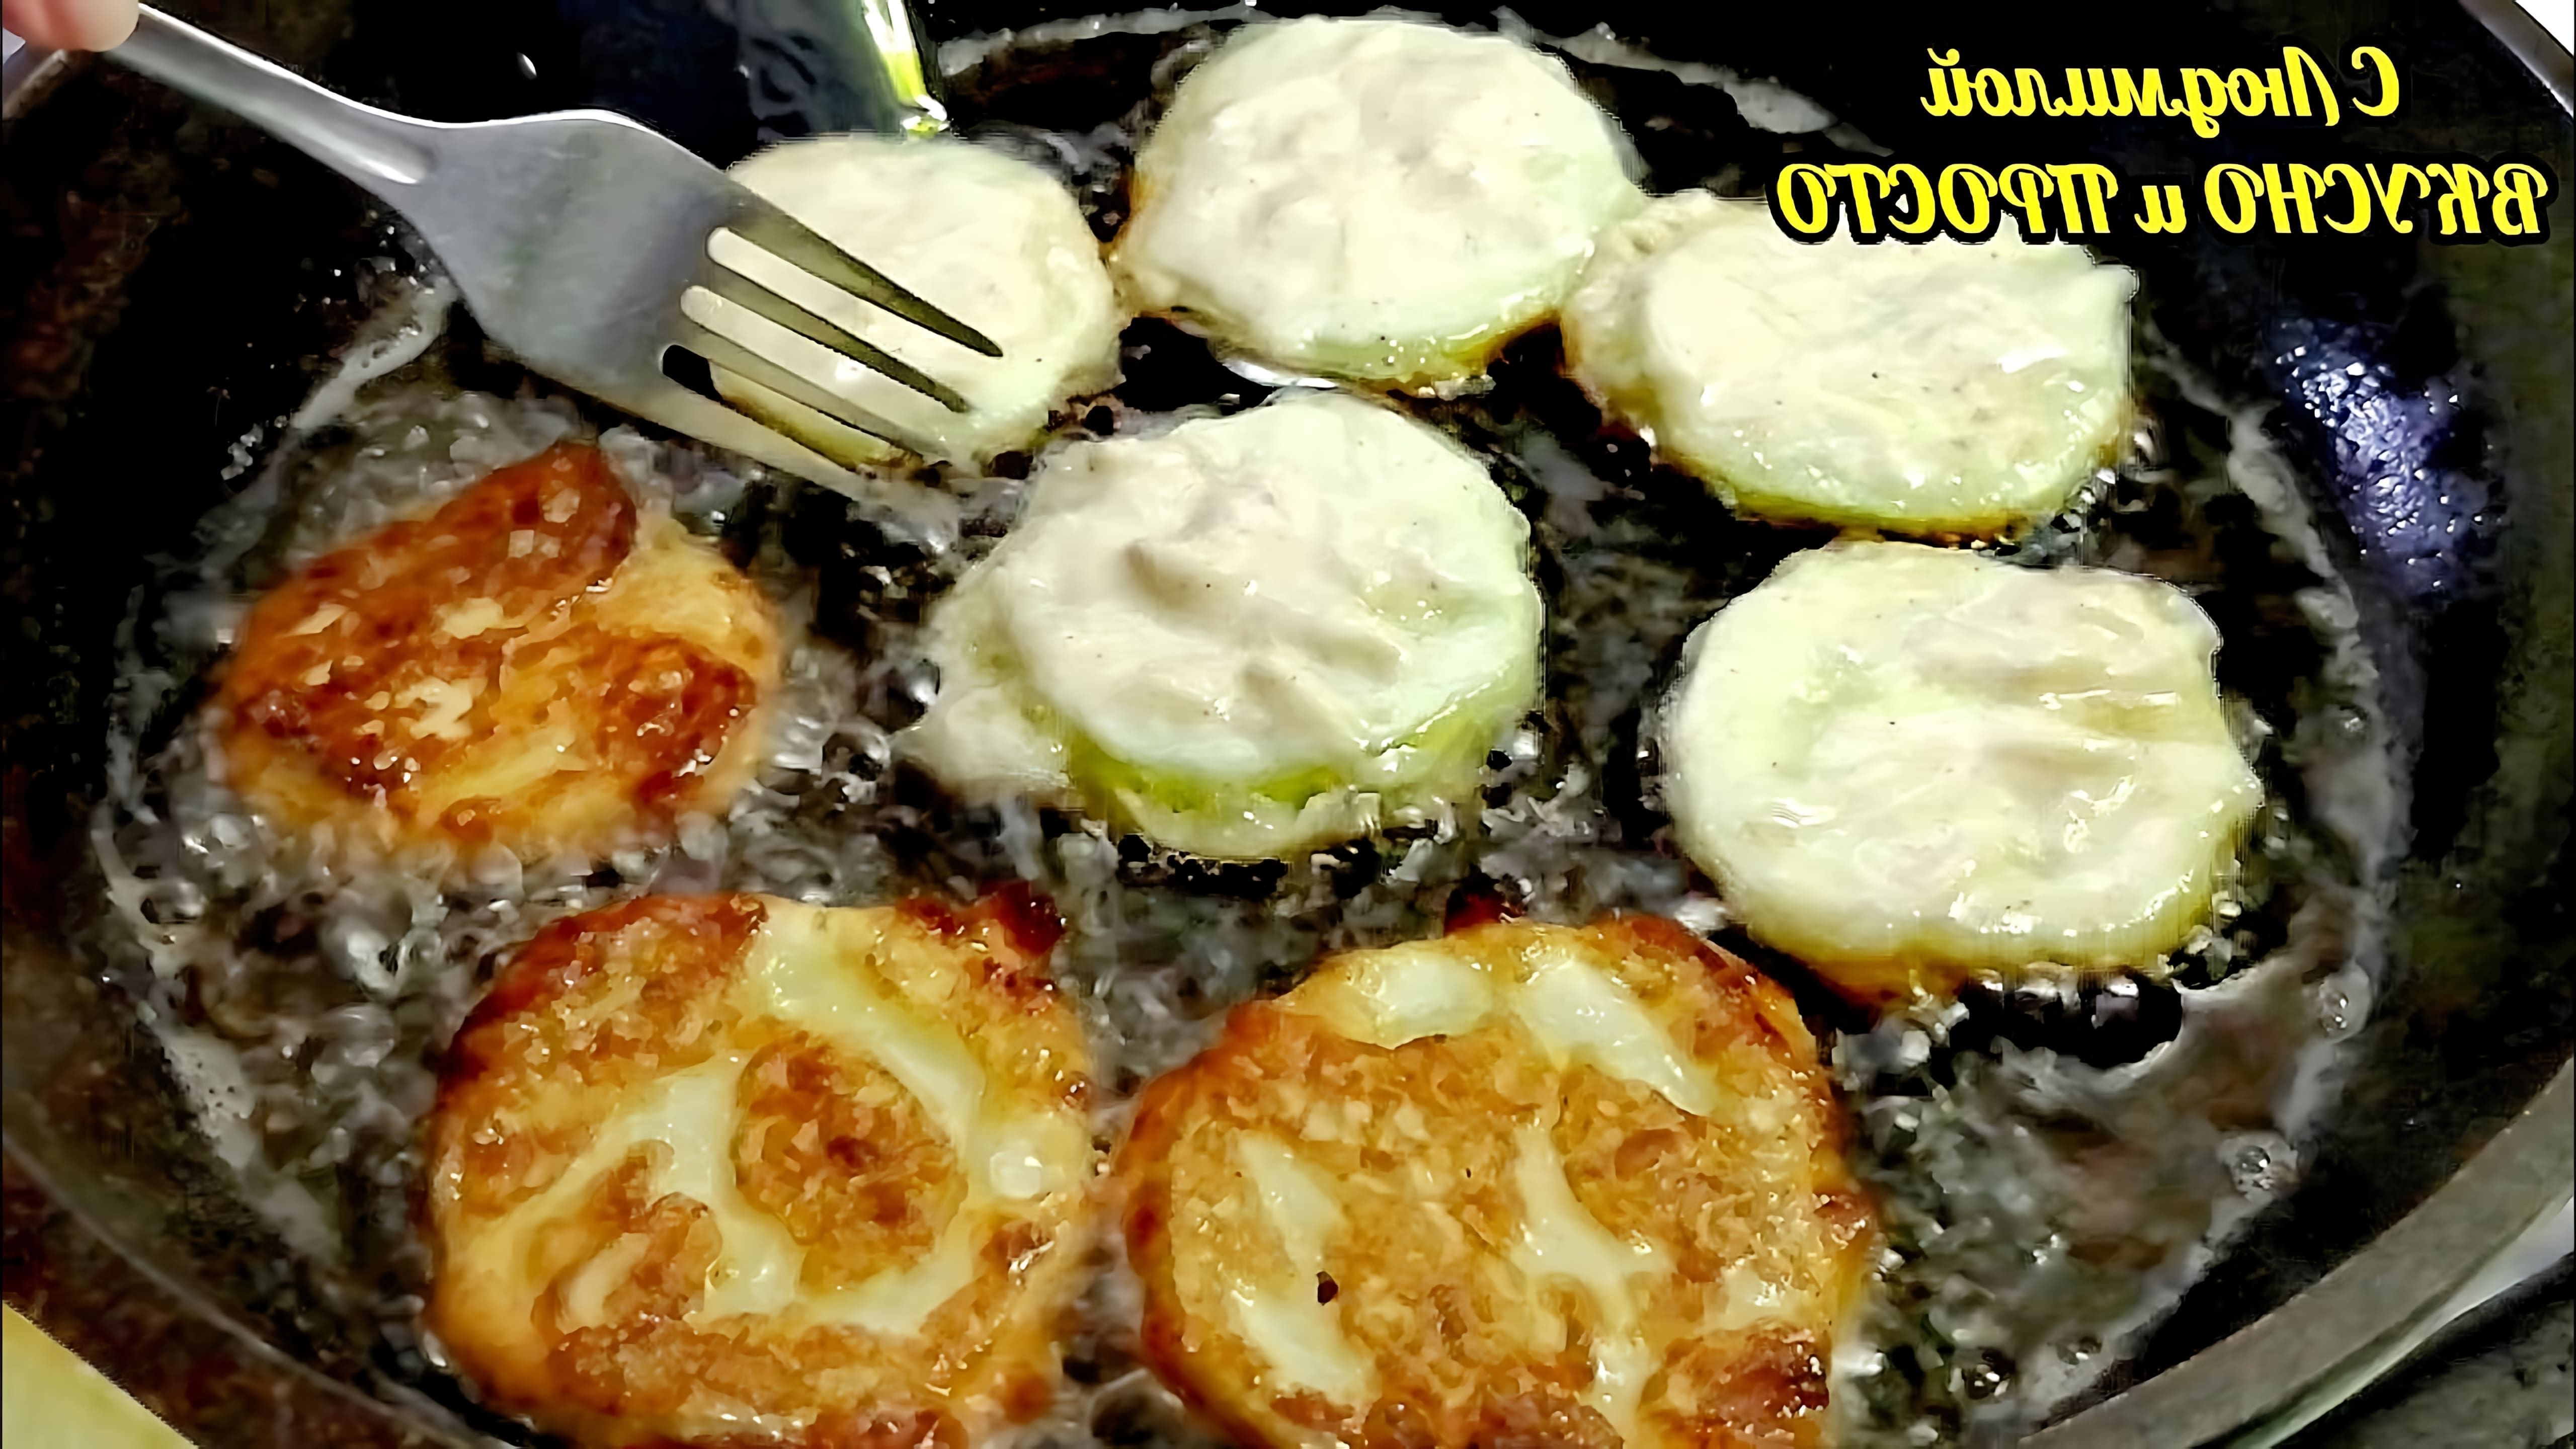 В этом видео демонстрируется рецепт приготовления кабачков в кляре с сыром